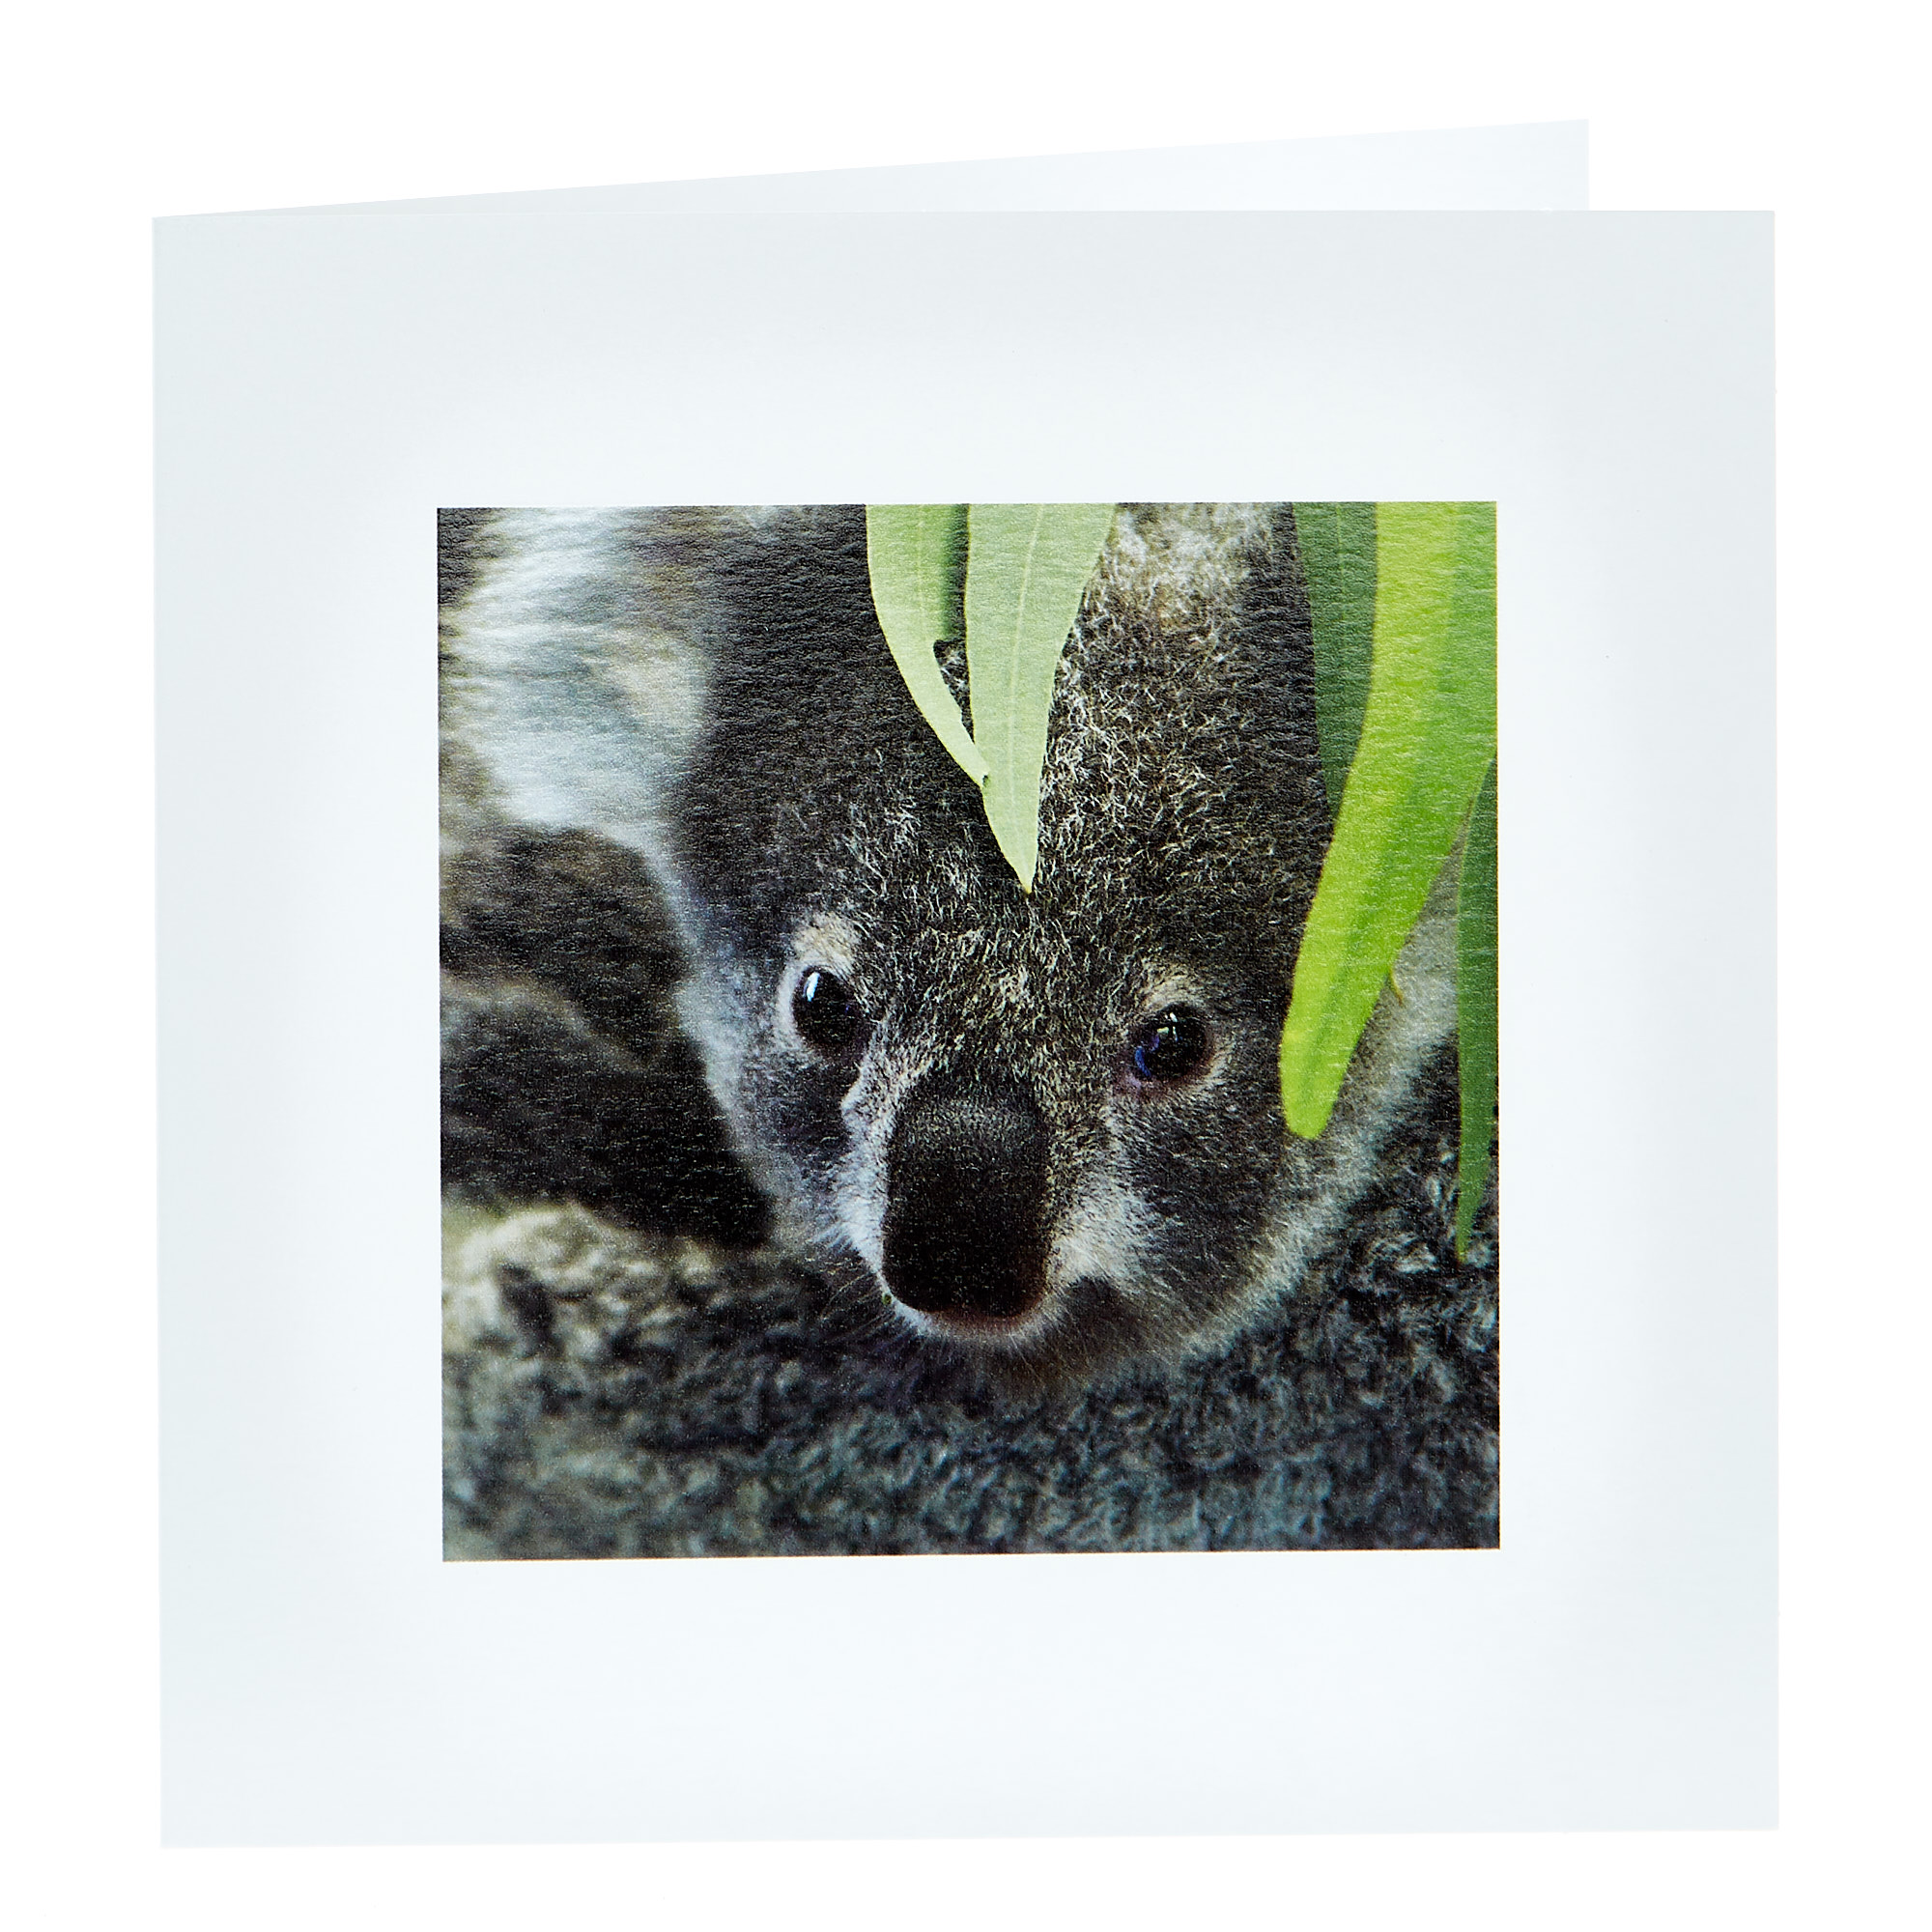 Any Occasion Card - Koala